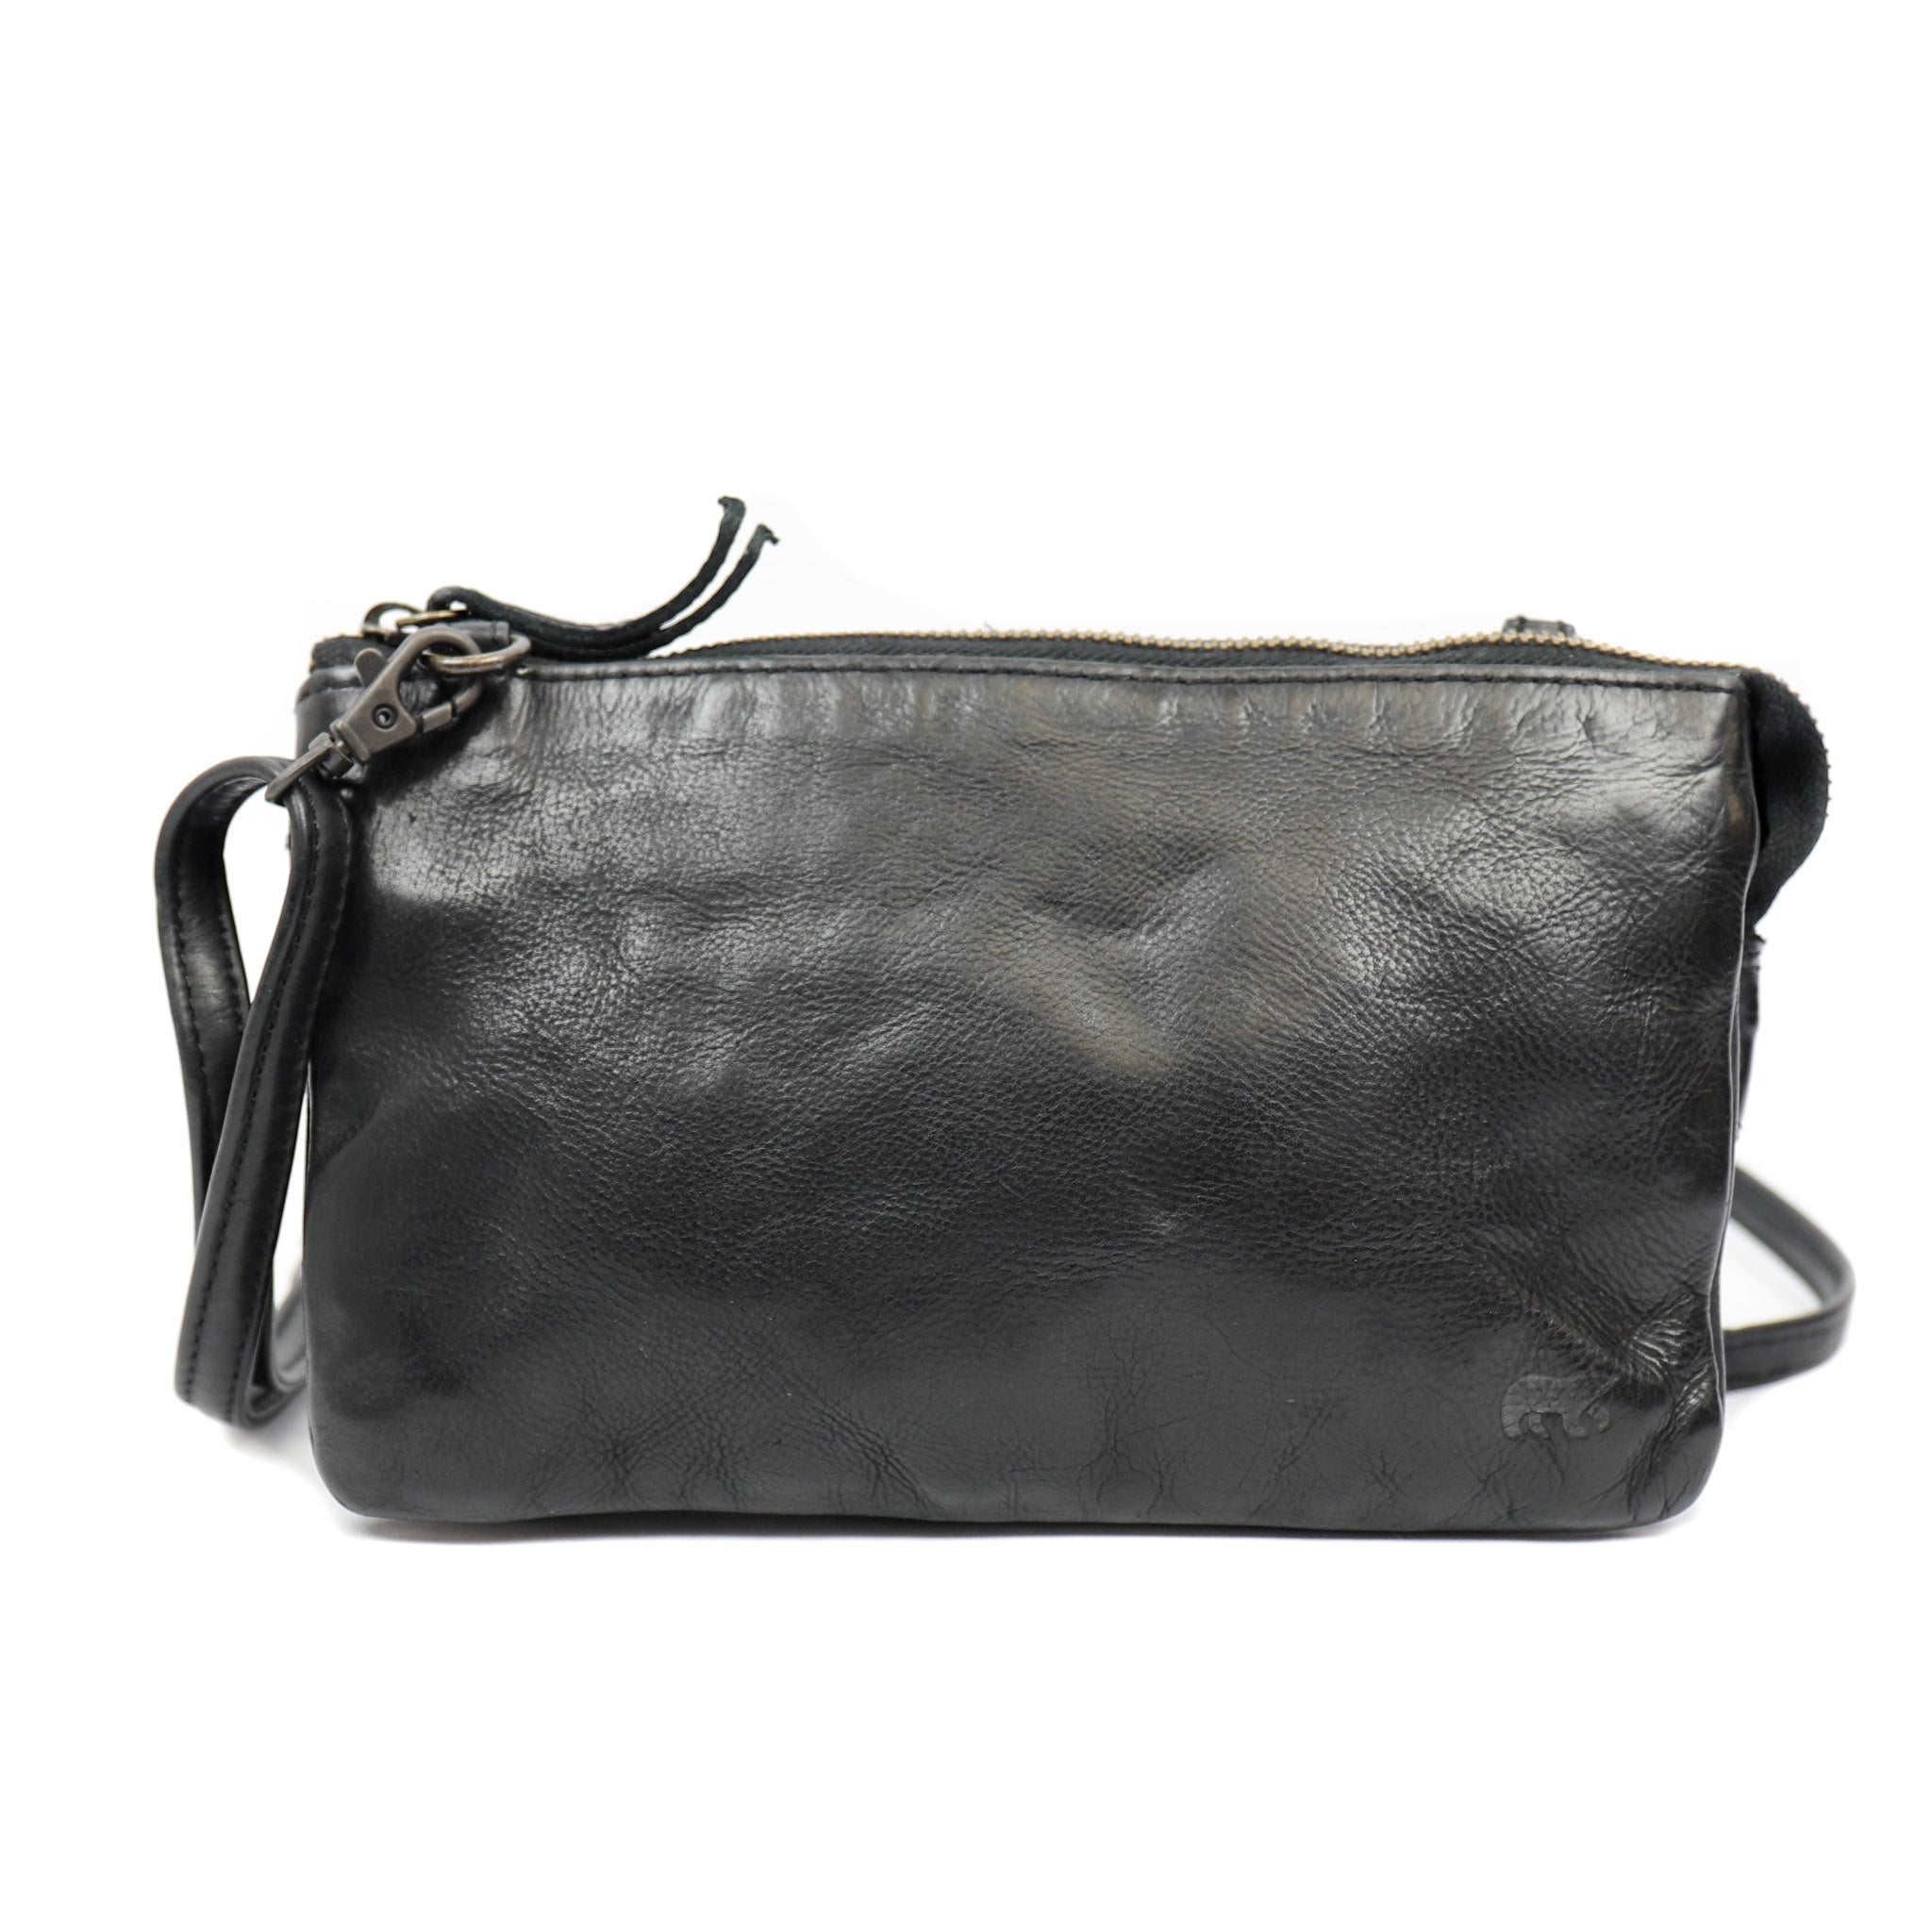 Purse bag 'Uma' black - CL 30996